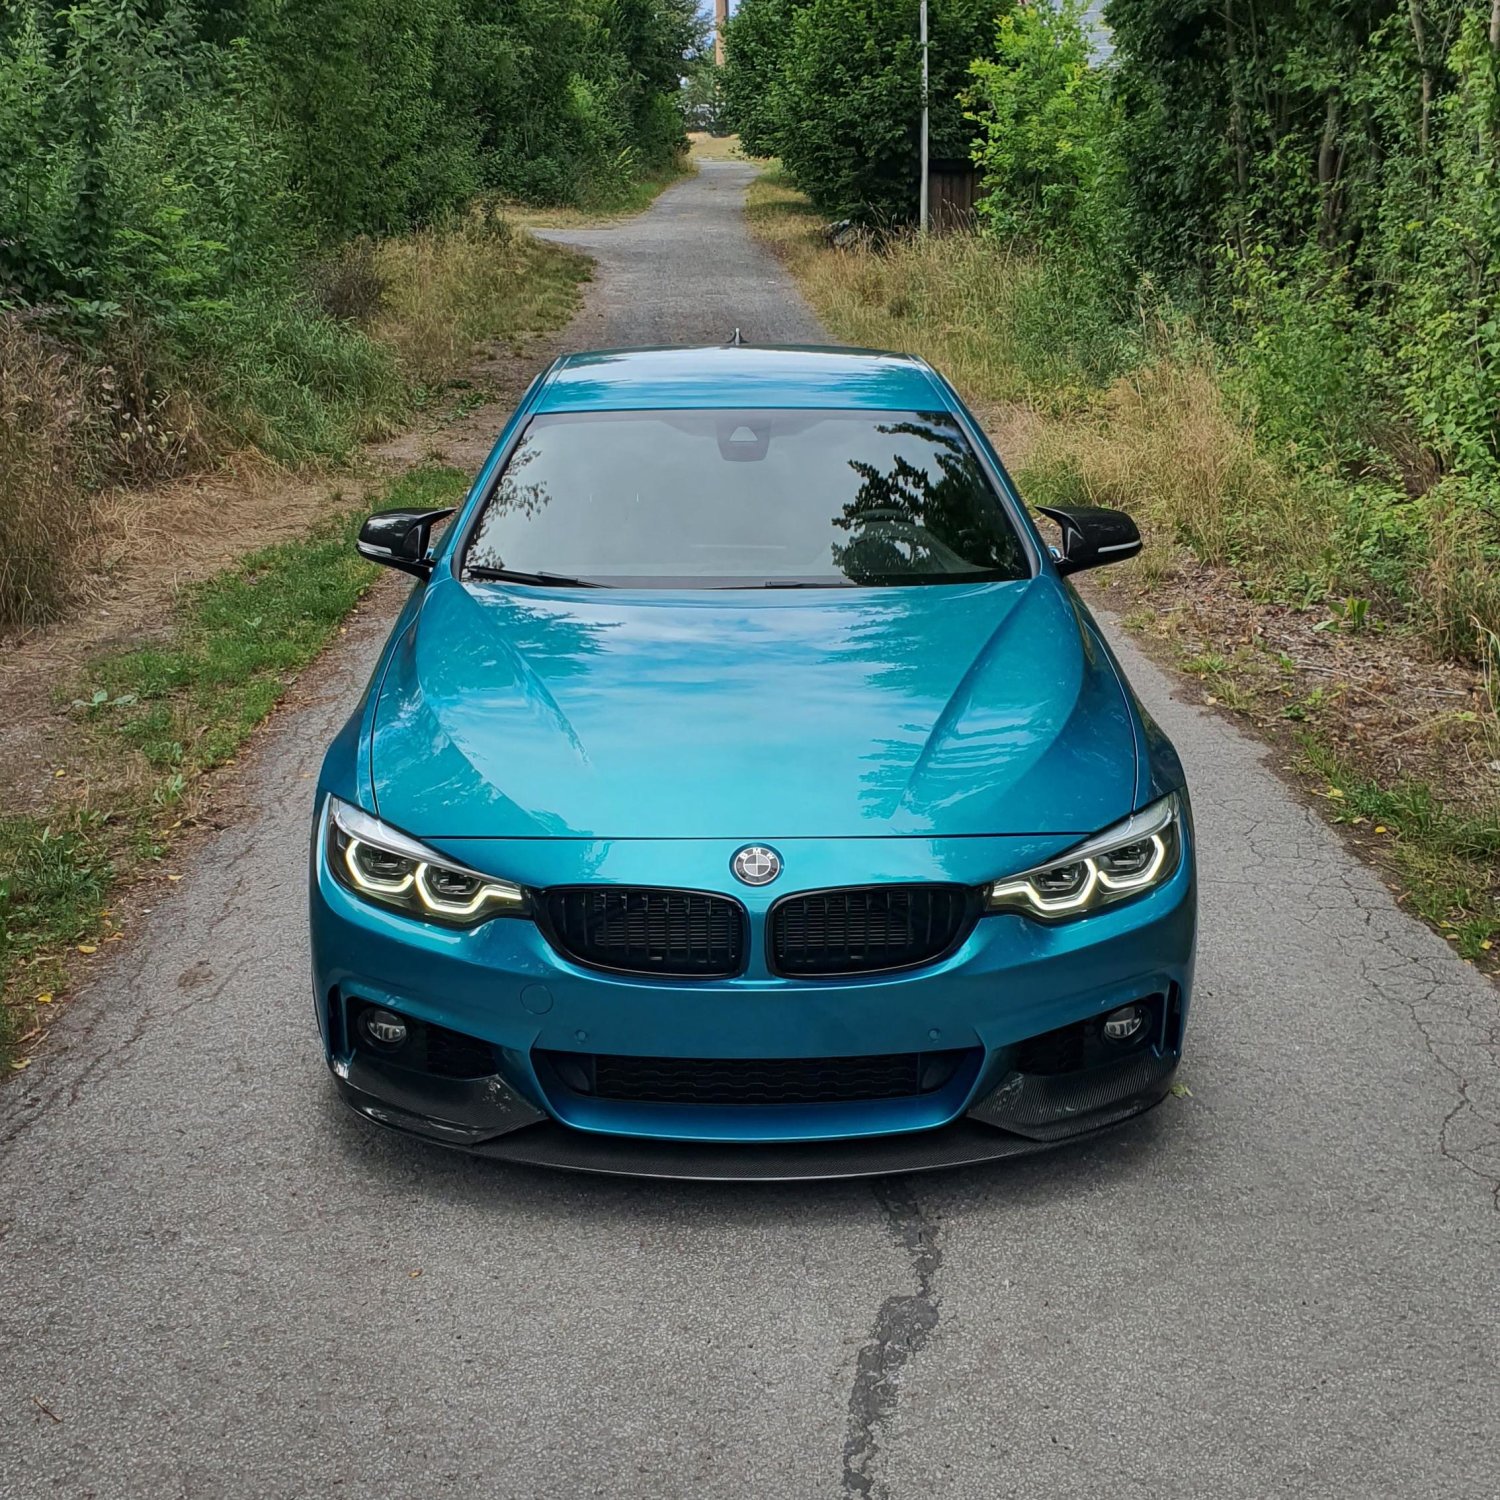 Spiegelkappen Carbon für BMW günstig bestellen